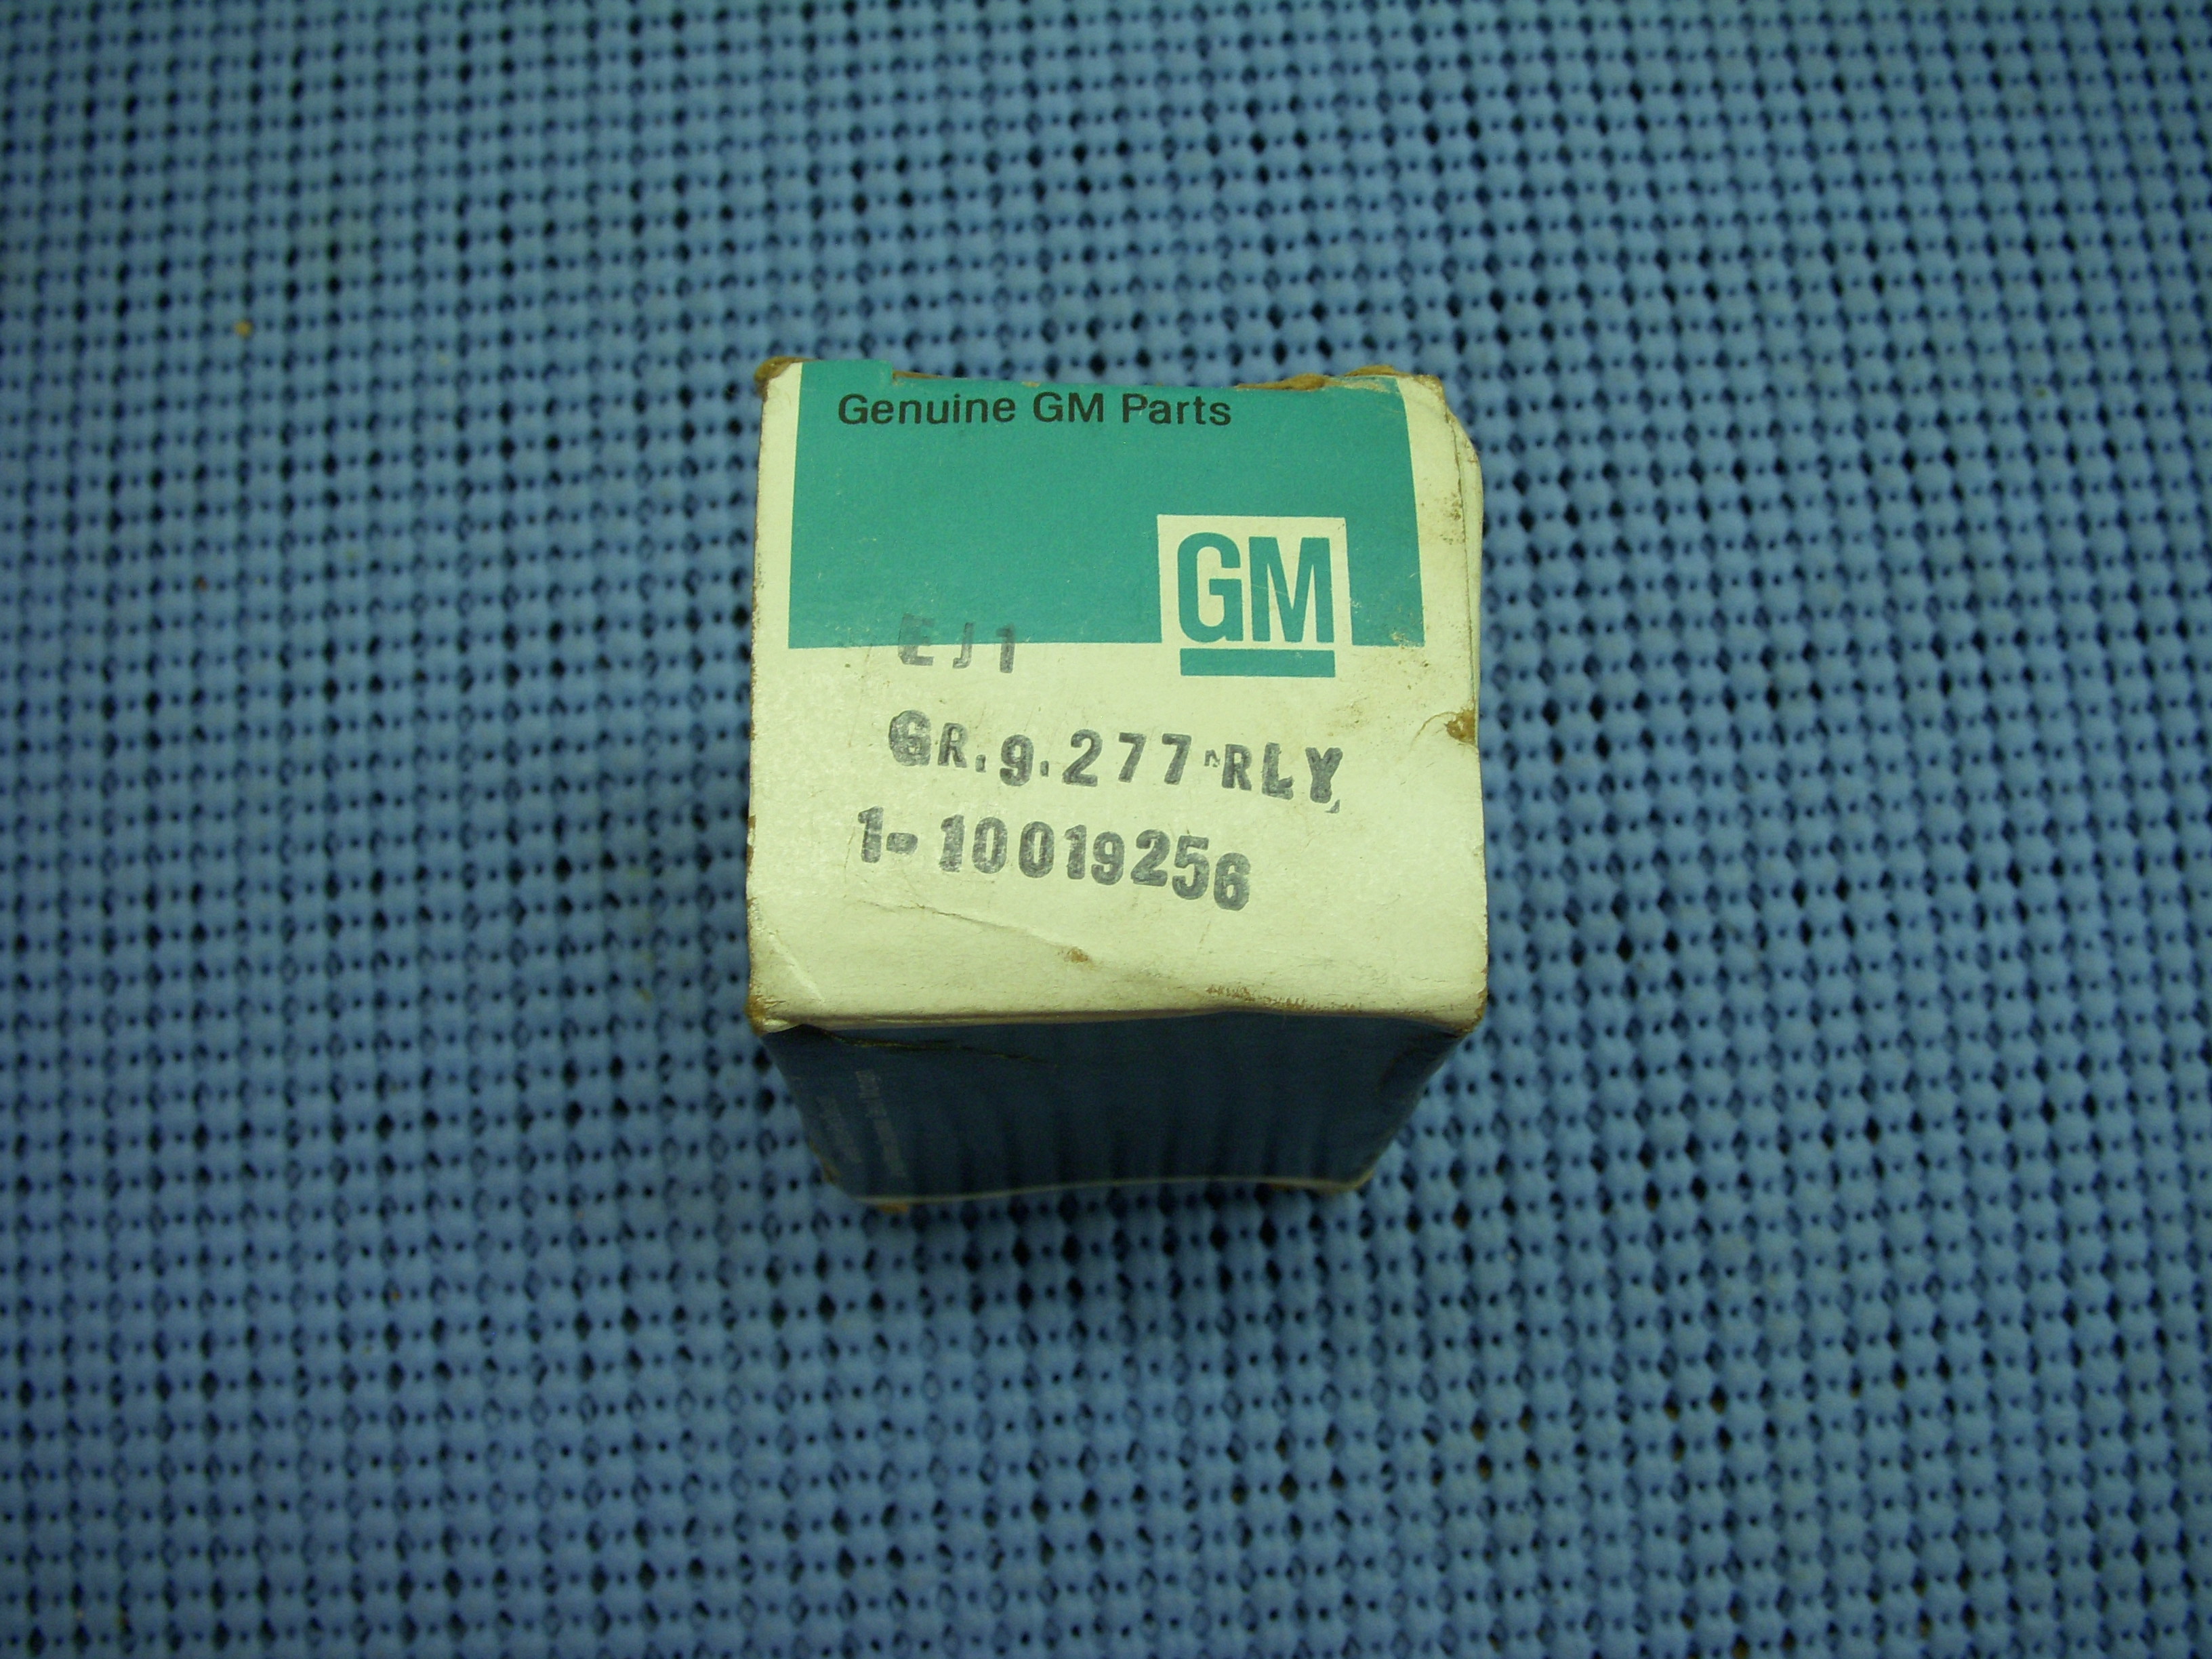 1981 GM A/C Compressor Time Delay Relay NOS # 10019256